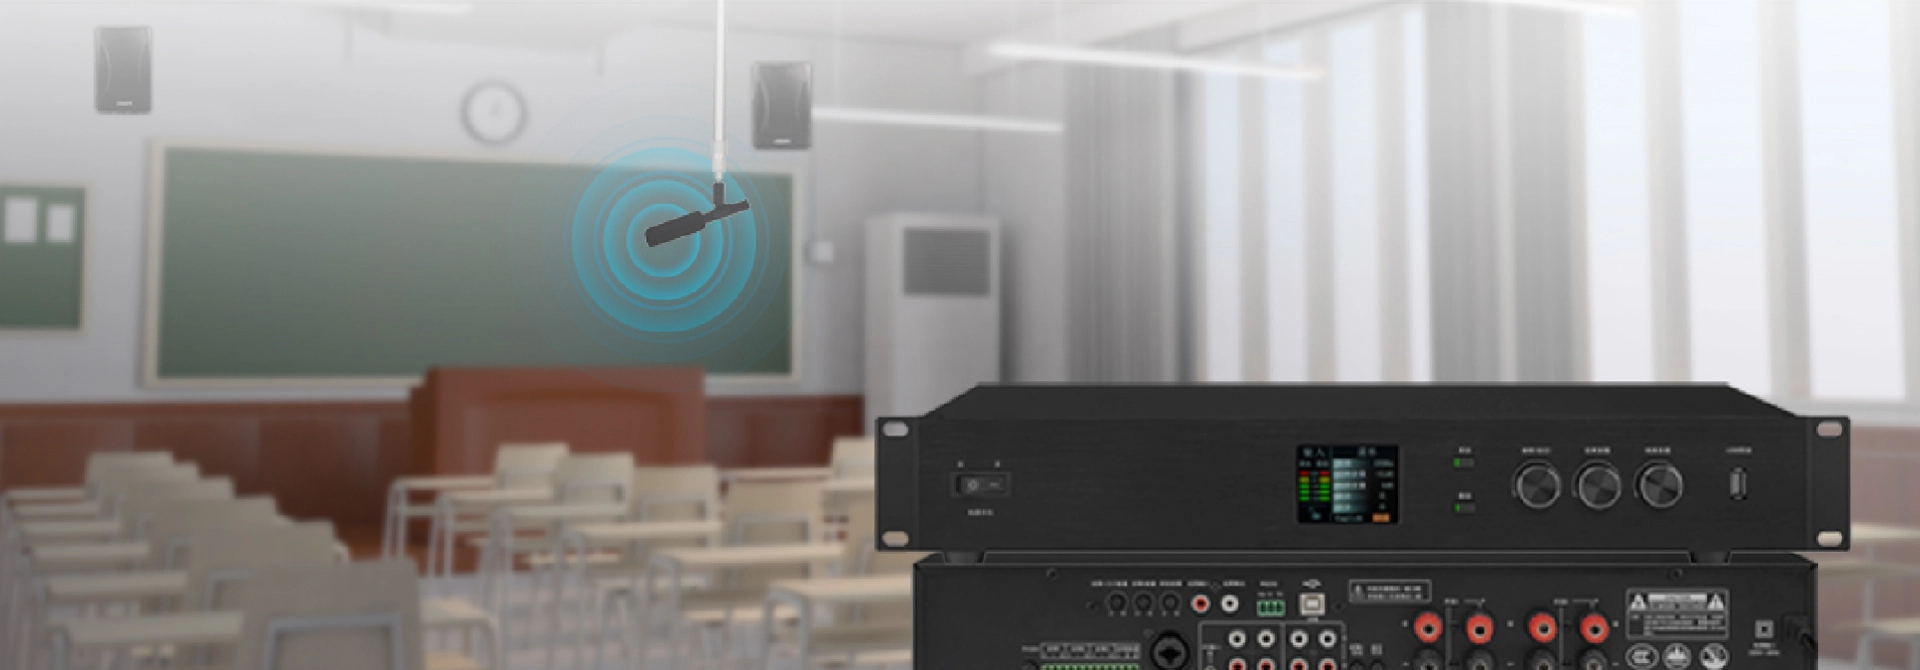 Soluzione intelligente del sistema di rinforzo del suono discreto per l'aula